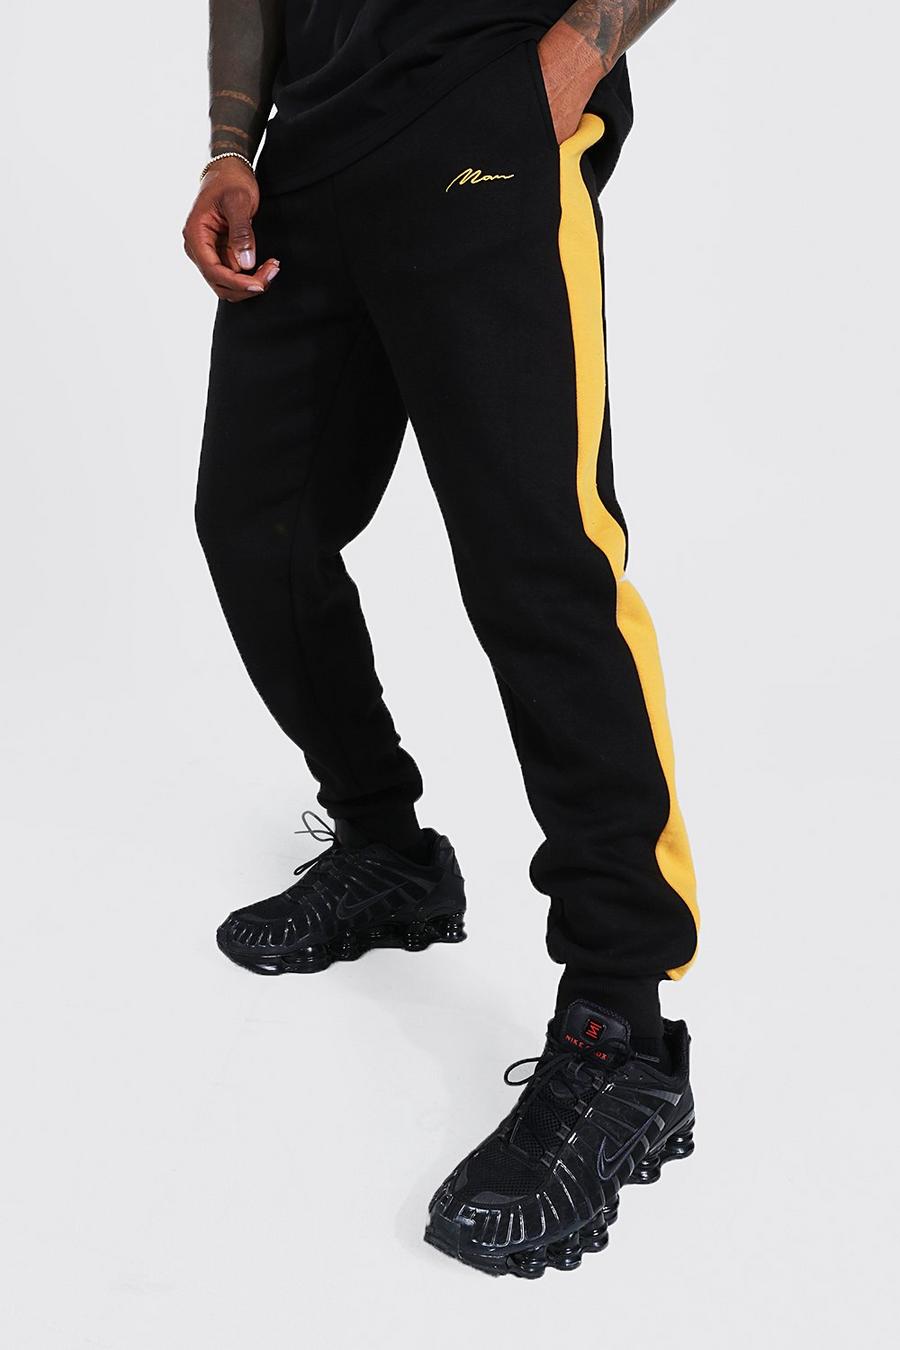 Pantalón deportivo MAN Original ajustado con colores en bloque image number 1